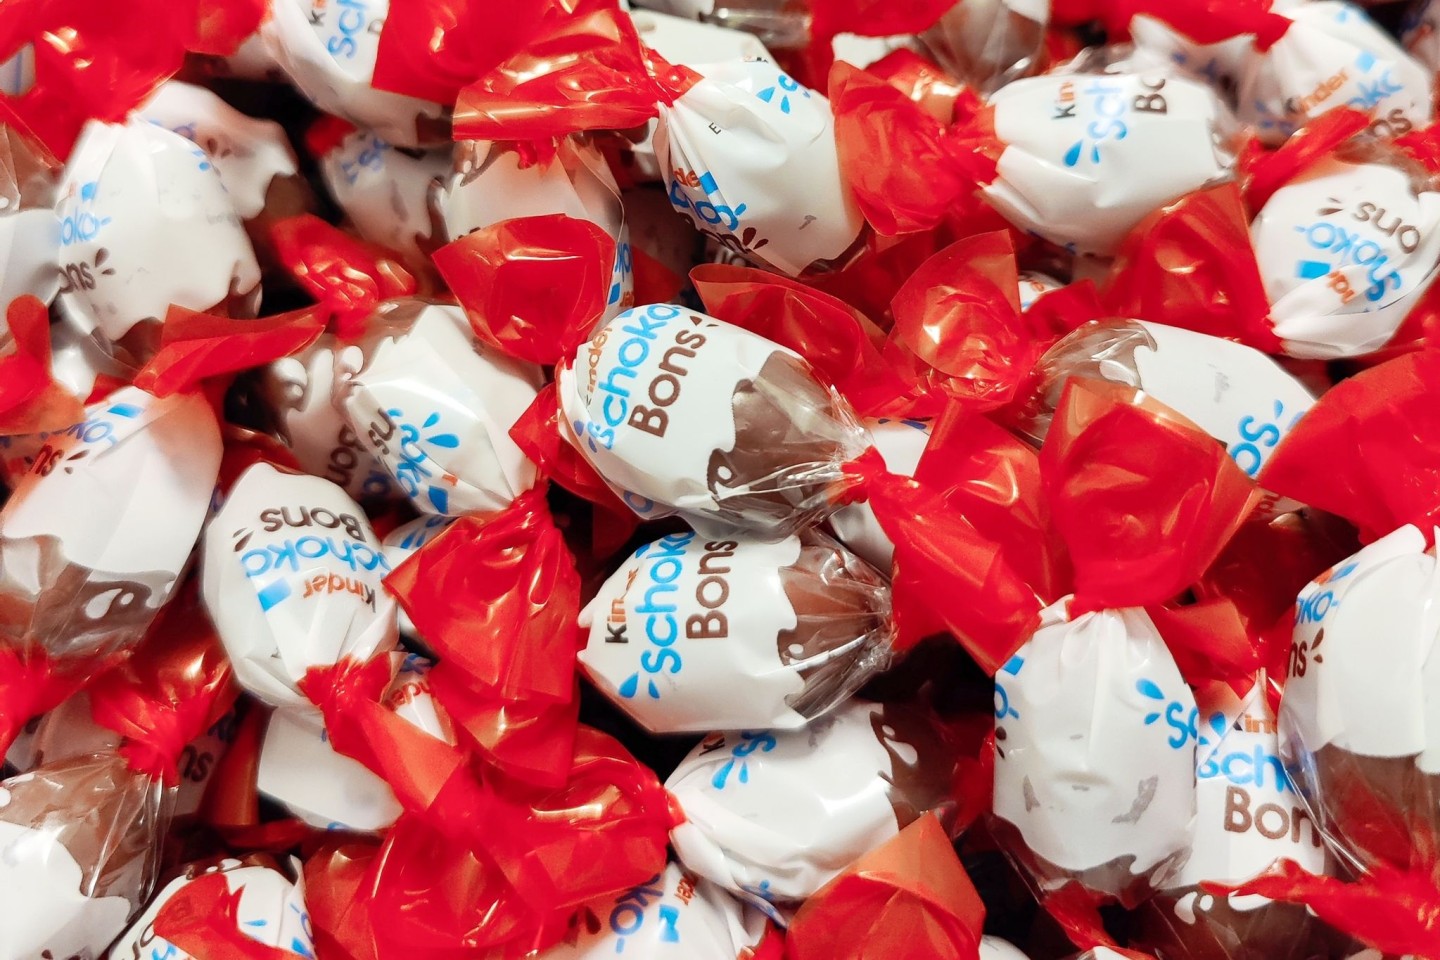 Knapp zwei Wochen vor Ostern ruft Ferrero in Deutschland einige Chargen verschiedener Kinder-Produkte zurück - darunter Schoko-Bons mit einem Mindesthaltbarkeitsdatum zwischen Mai und Septe...